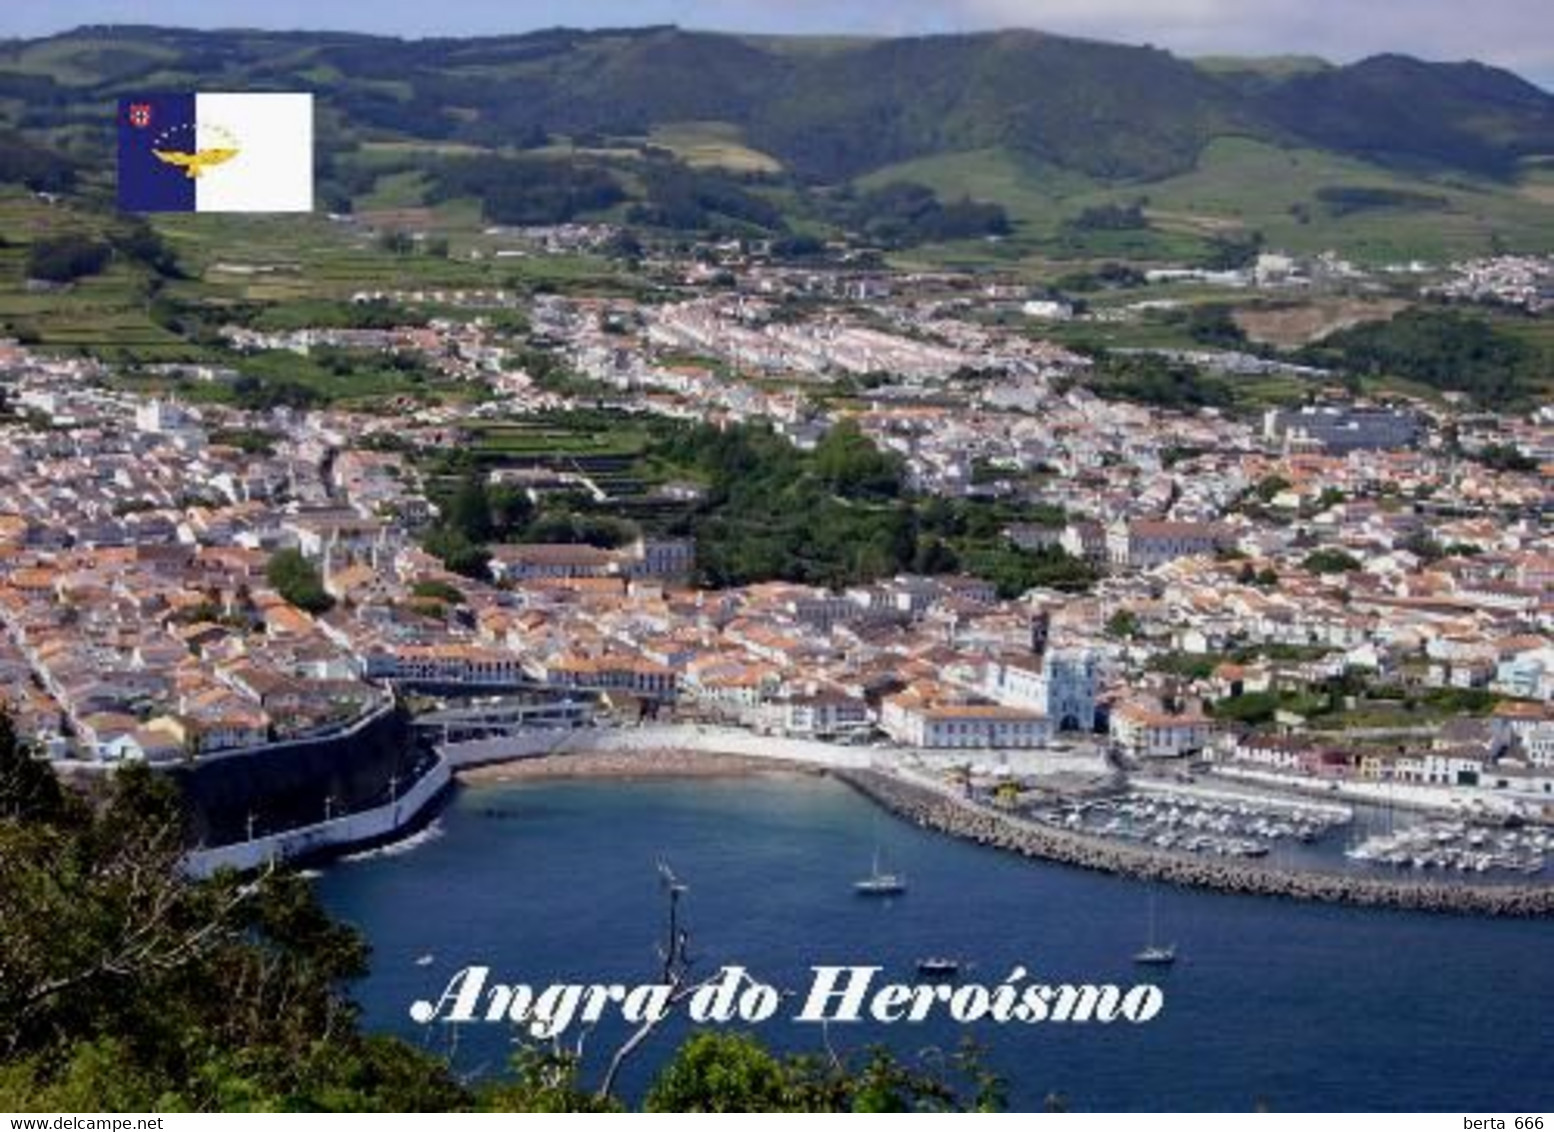 Azores Terceira Island Angra Do Heroismo UNESCO Aerial View New Postcard - Açores